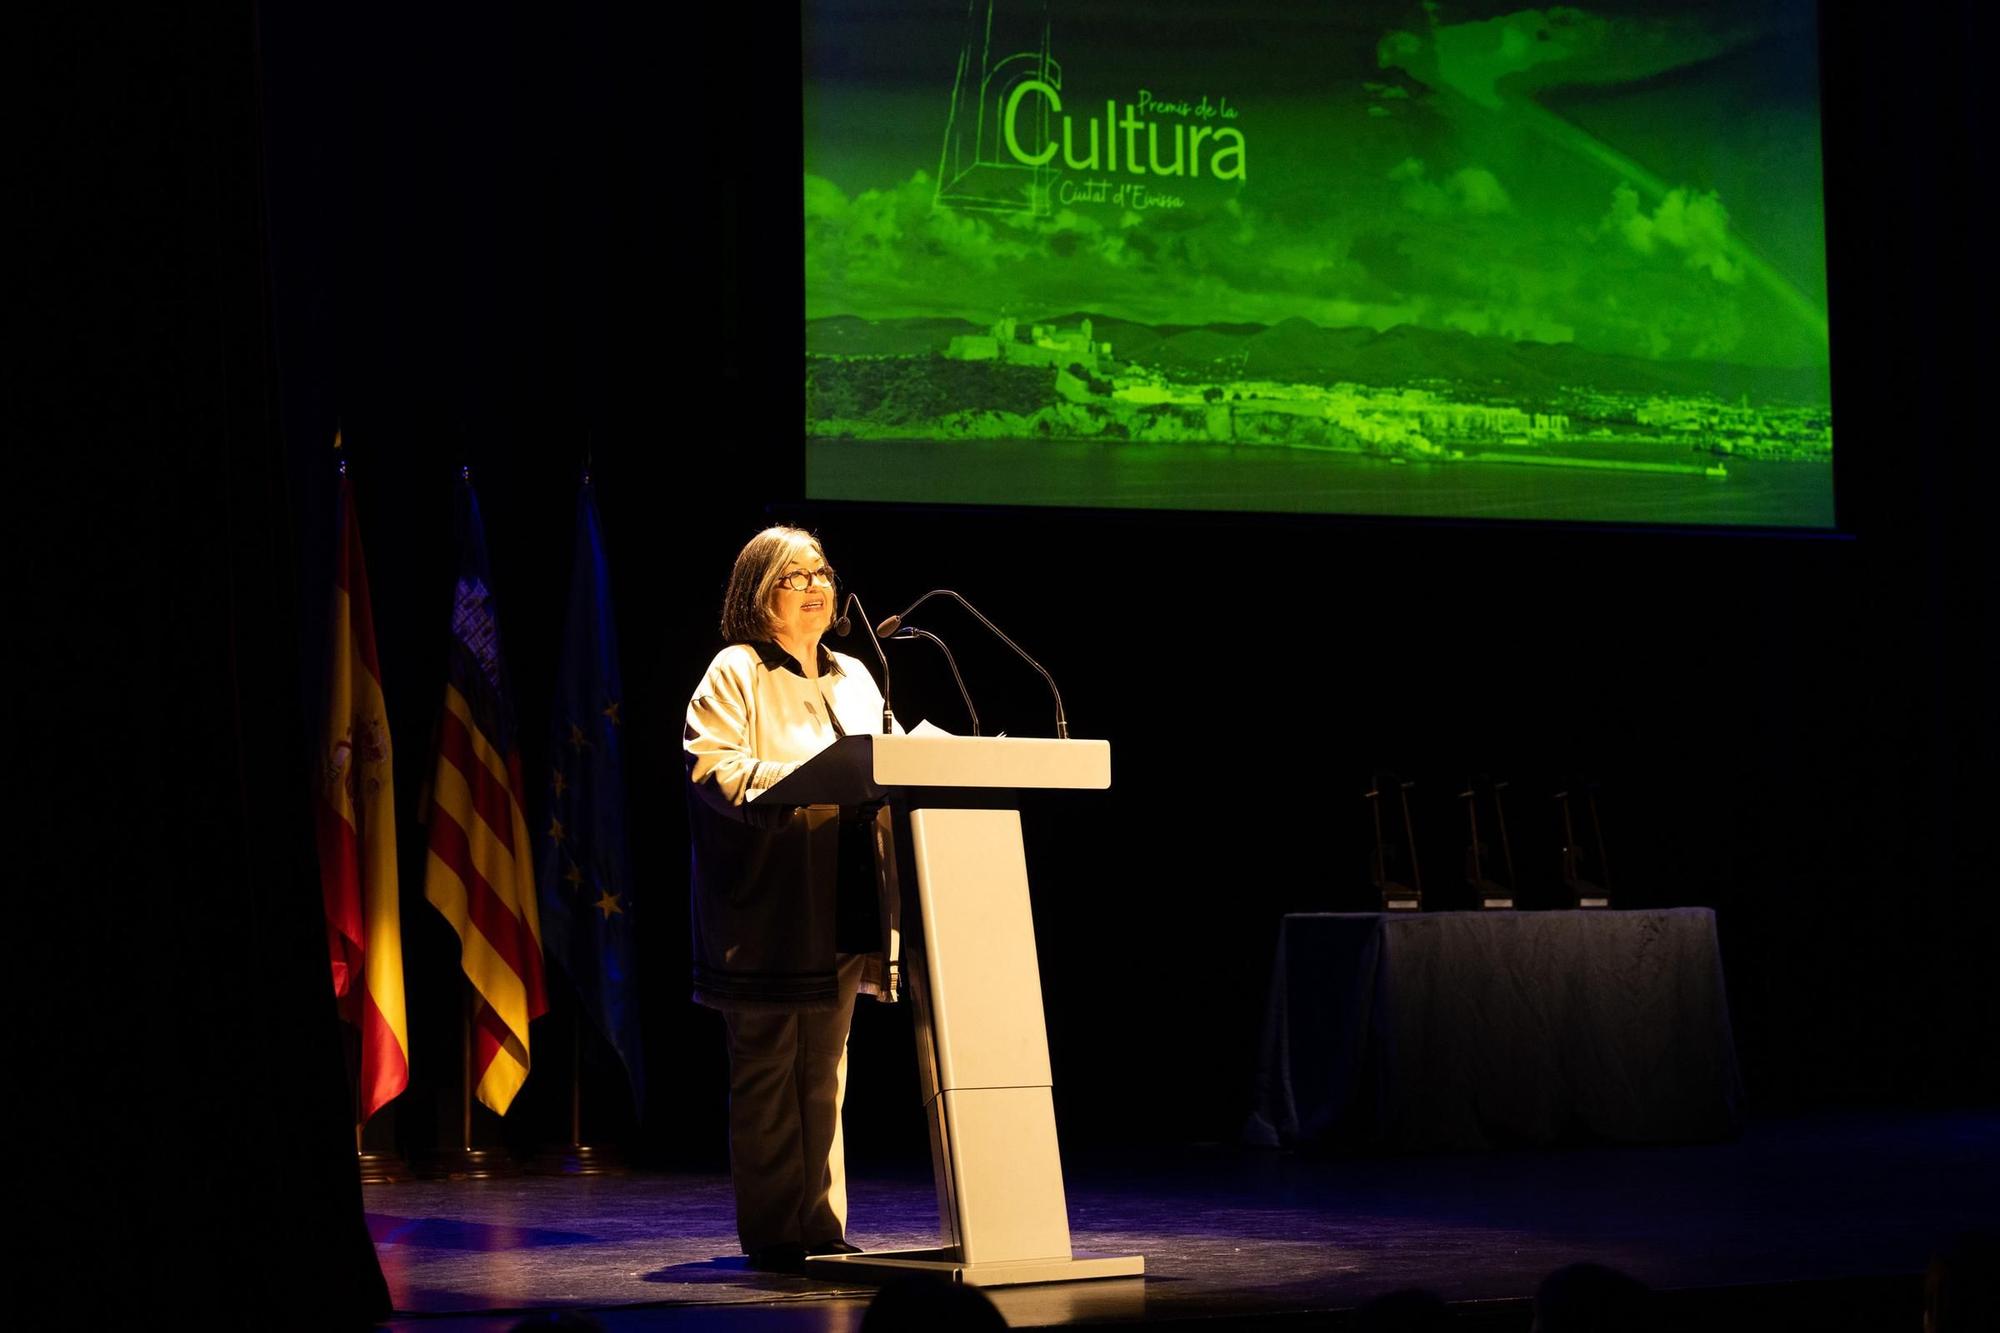 Reconocimiento institucional a tres referentes culturales de la ciudad de Ibiza